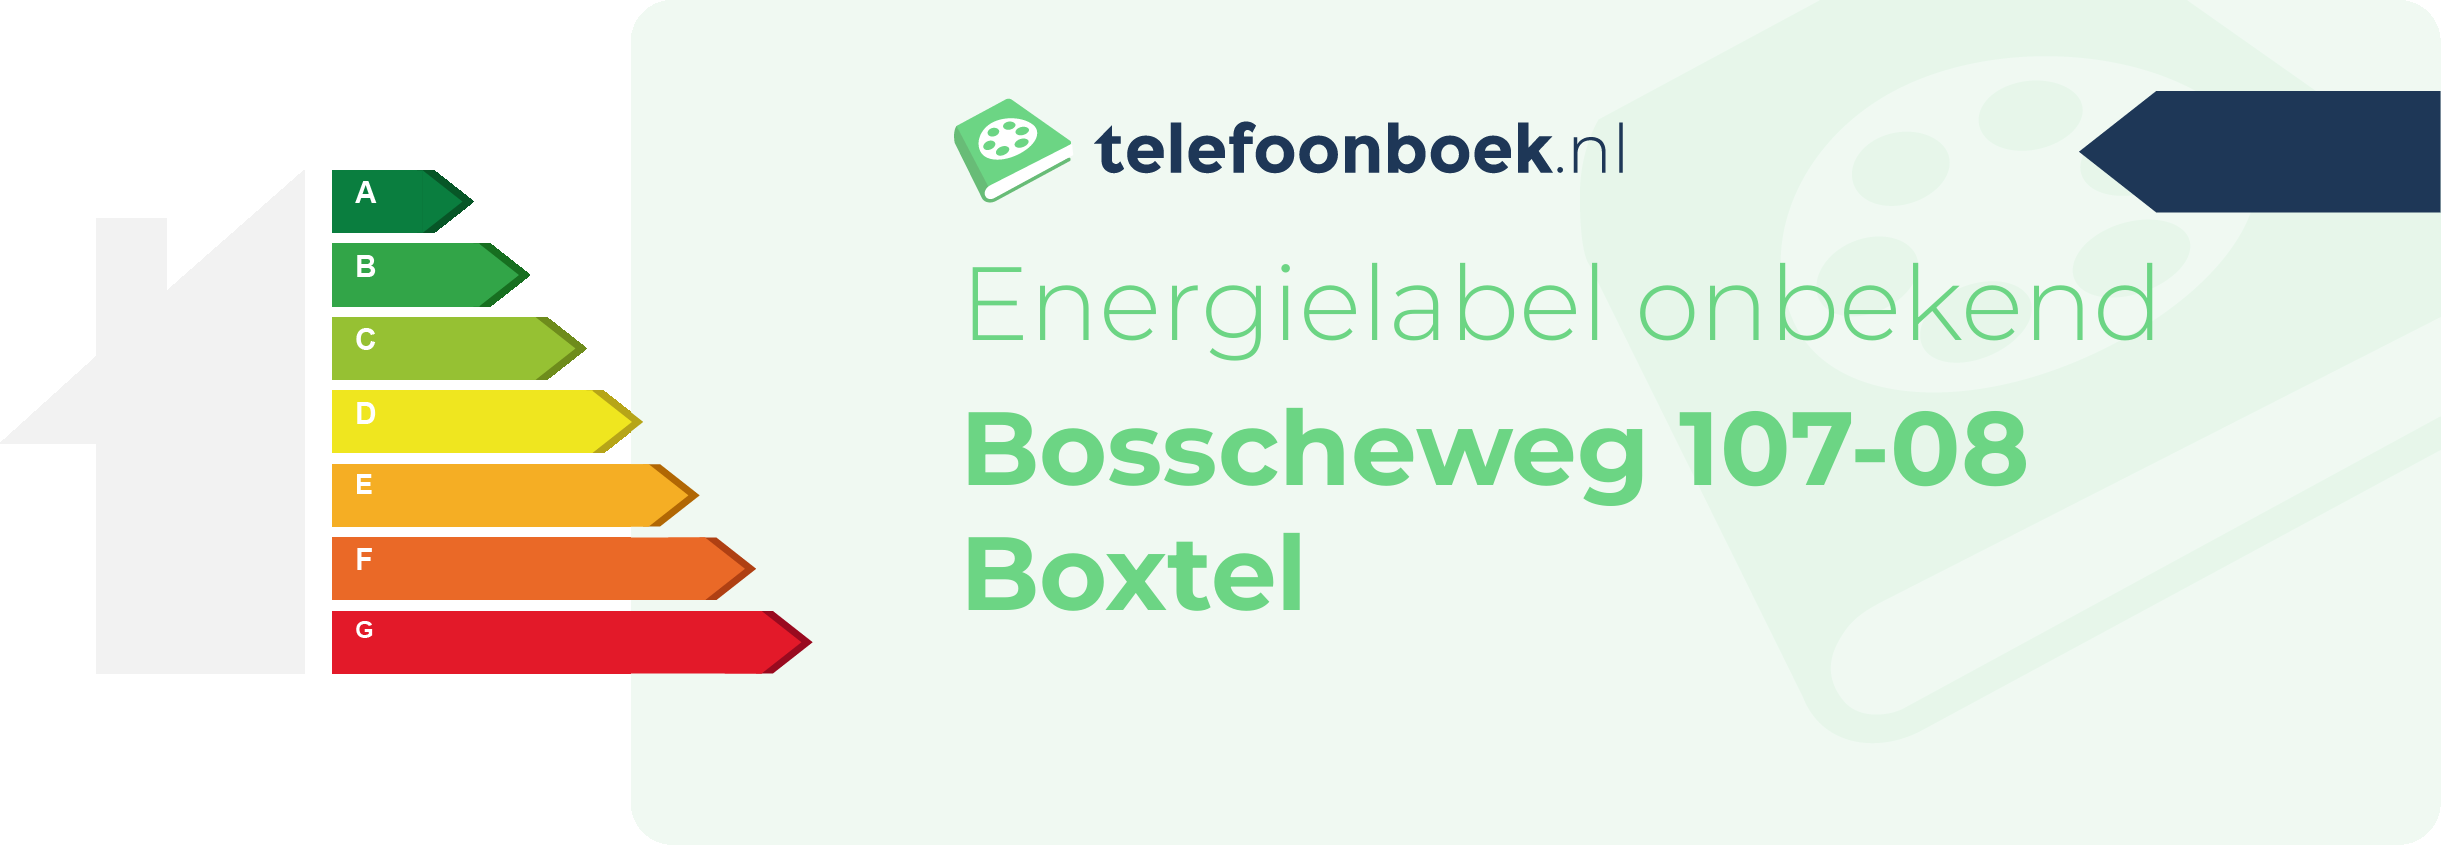 Energielabel Bosscheweg 107-08 Boxtel